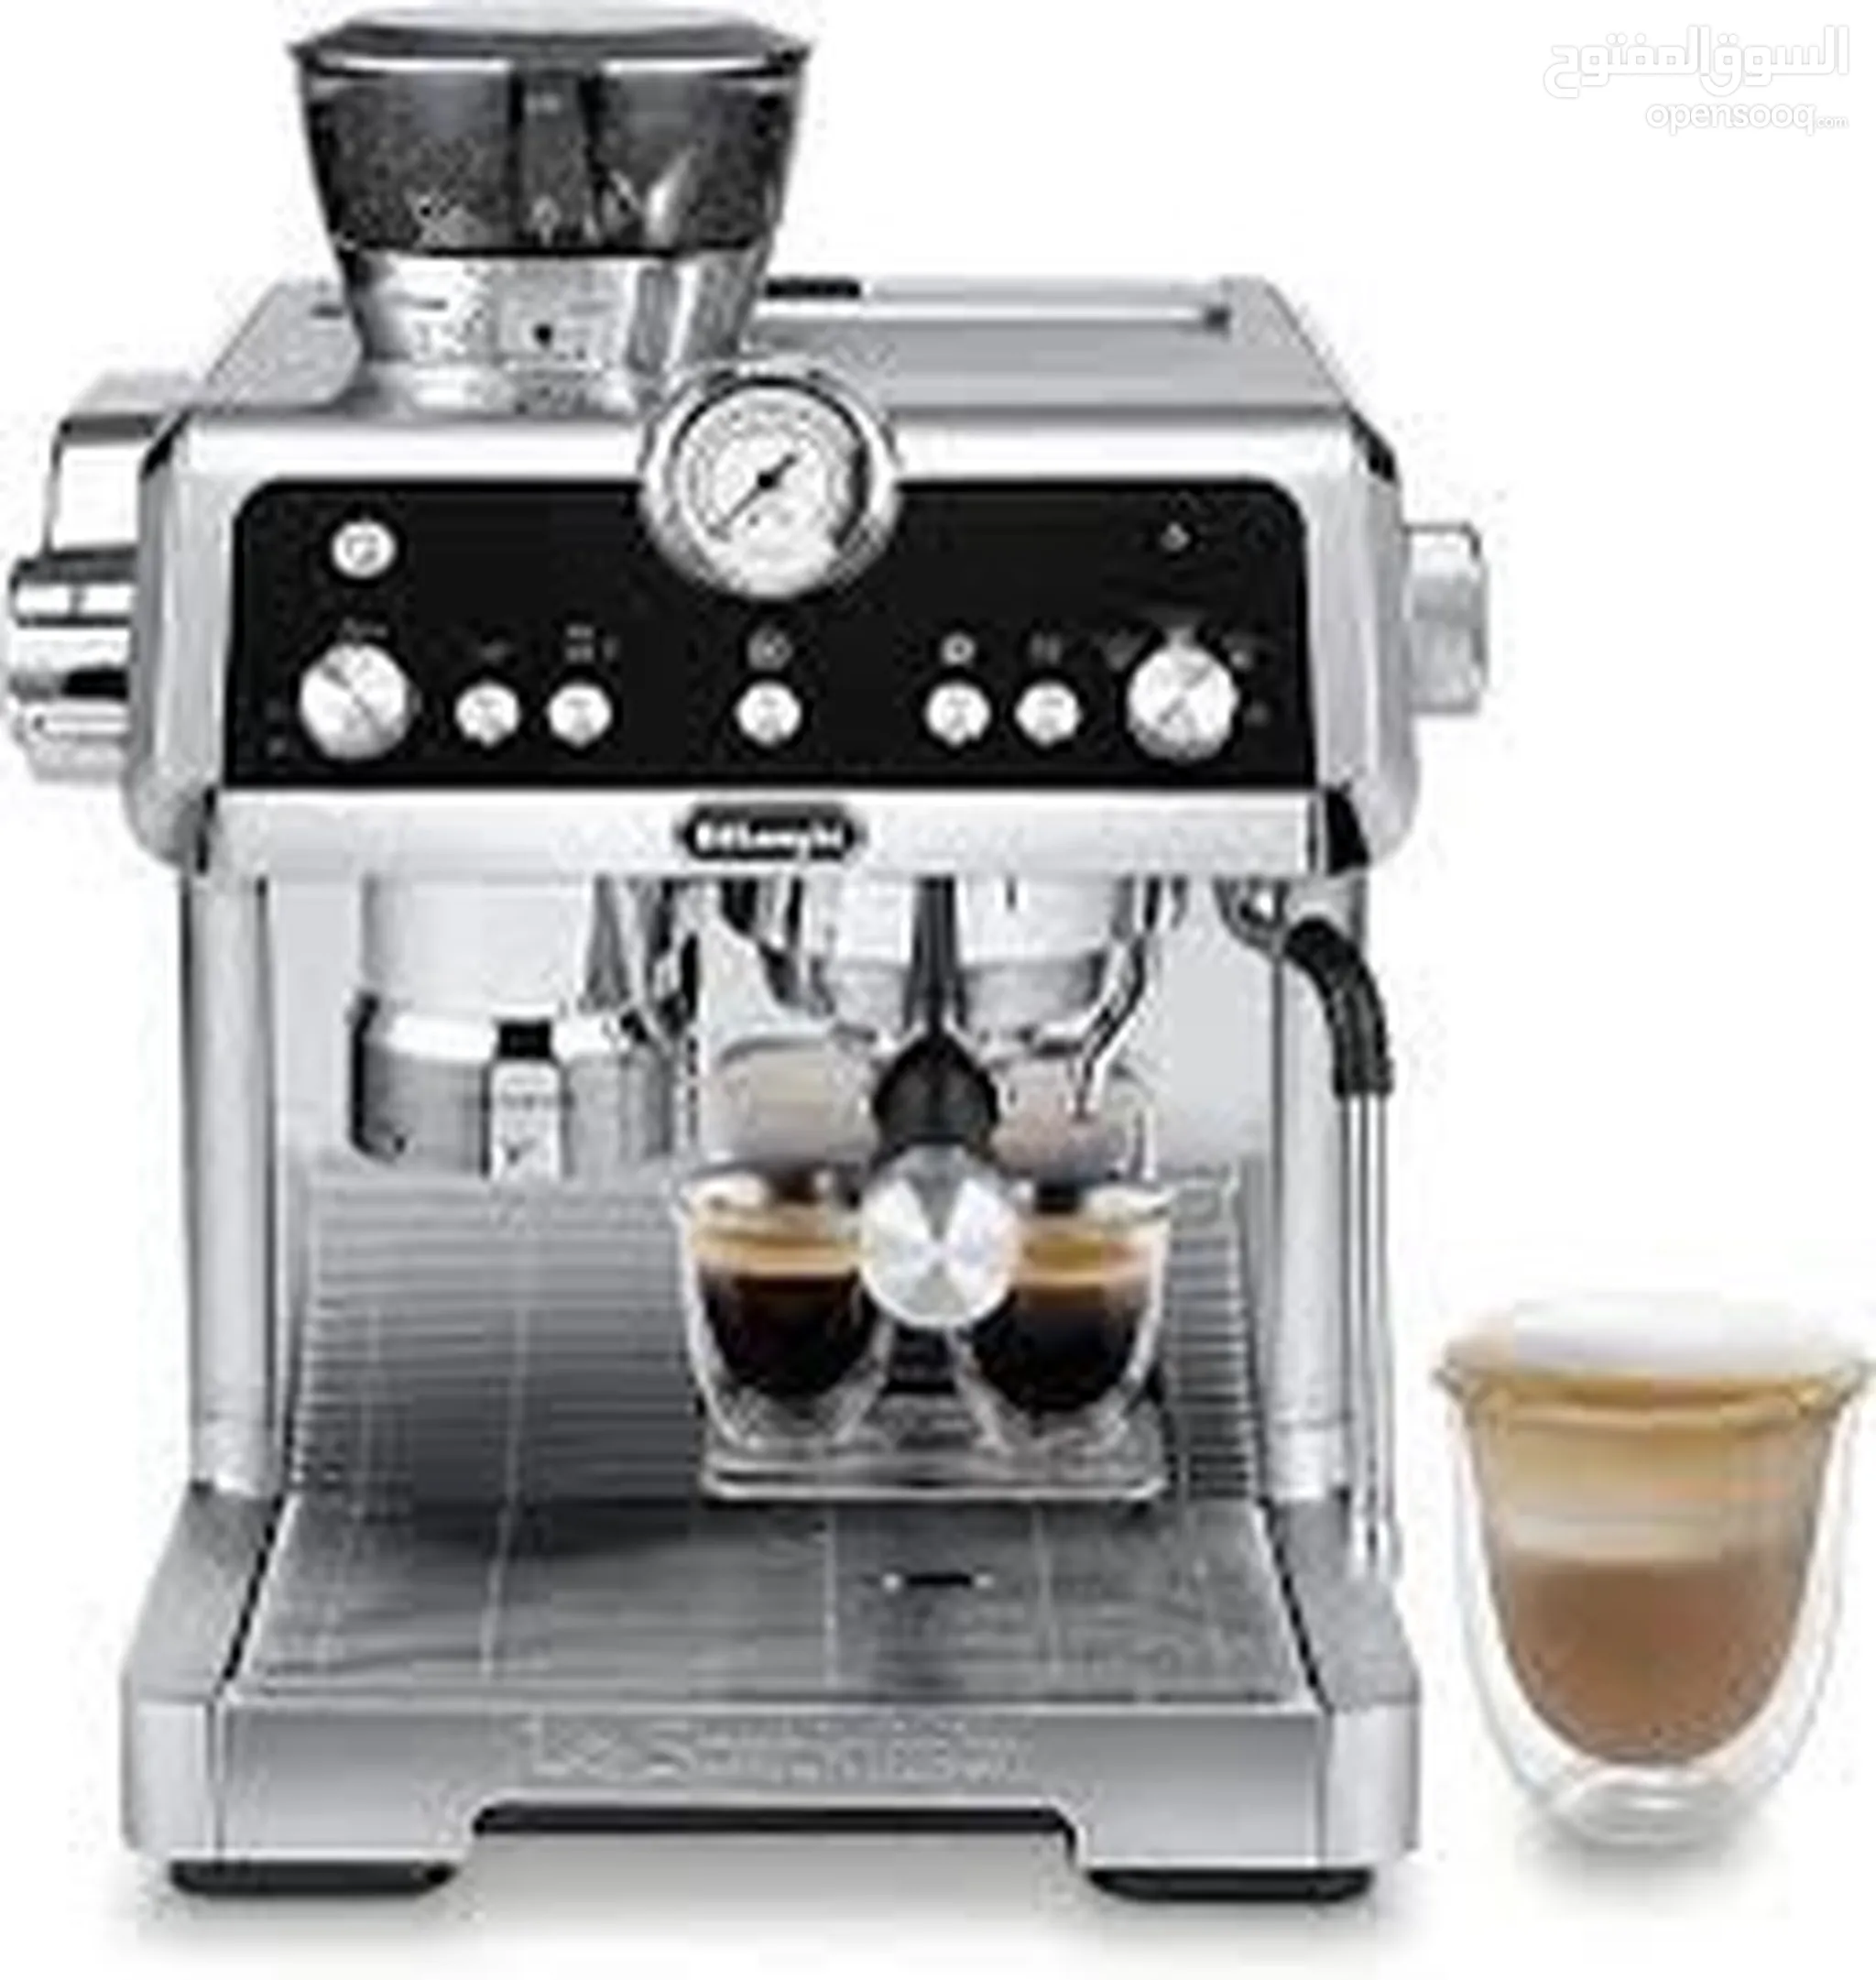 ماكينات صنع القهوة للبيع في الإمارات : افضل سعر | السوق المفتوح